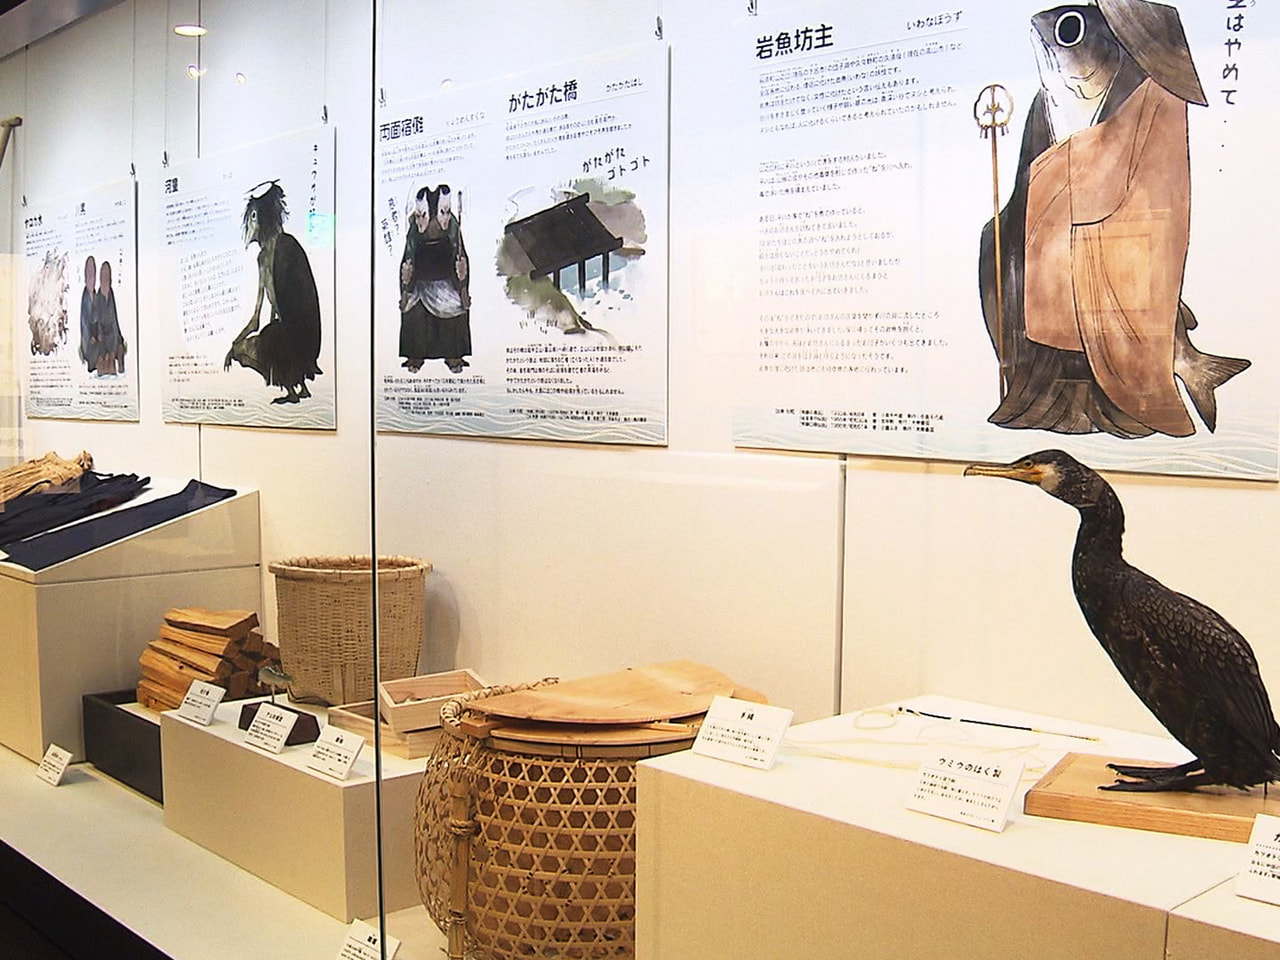 岐阜県に伝わる妖怪のうち川や漁に関わりの深いものを紹介した特別展が、岐阜市で開か...